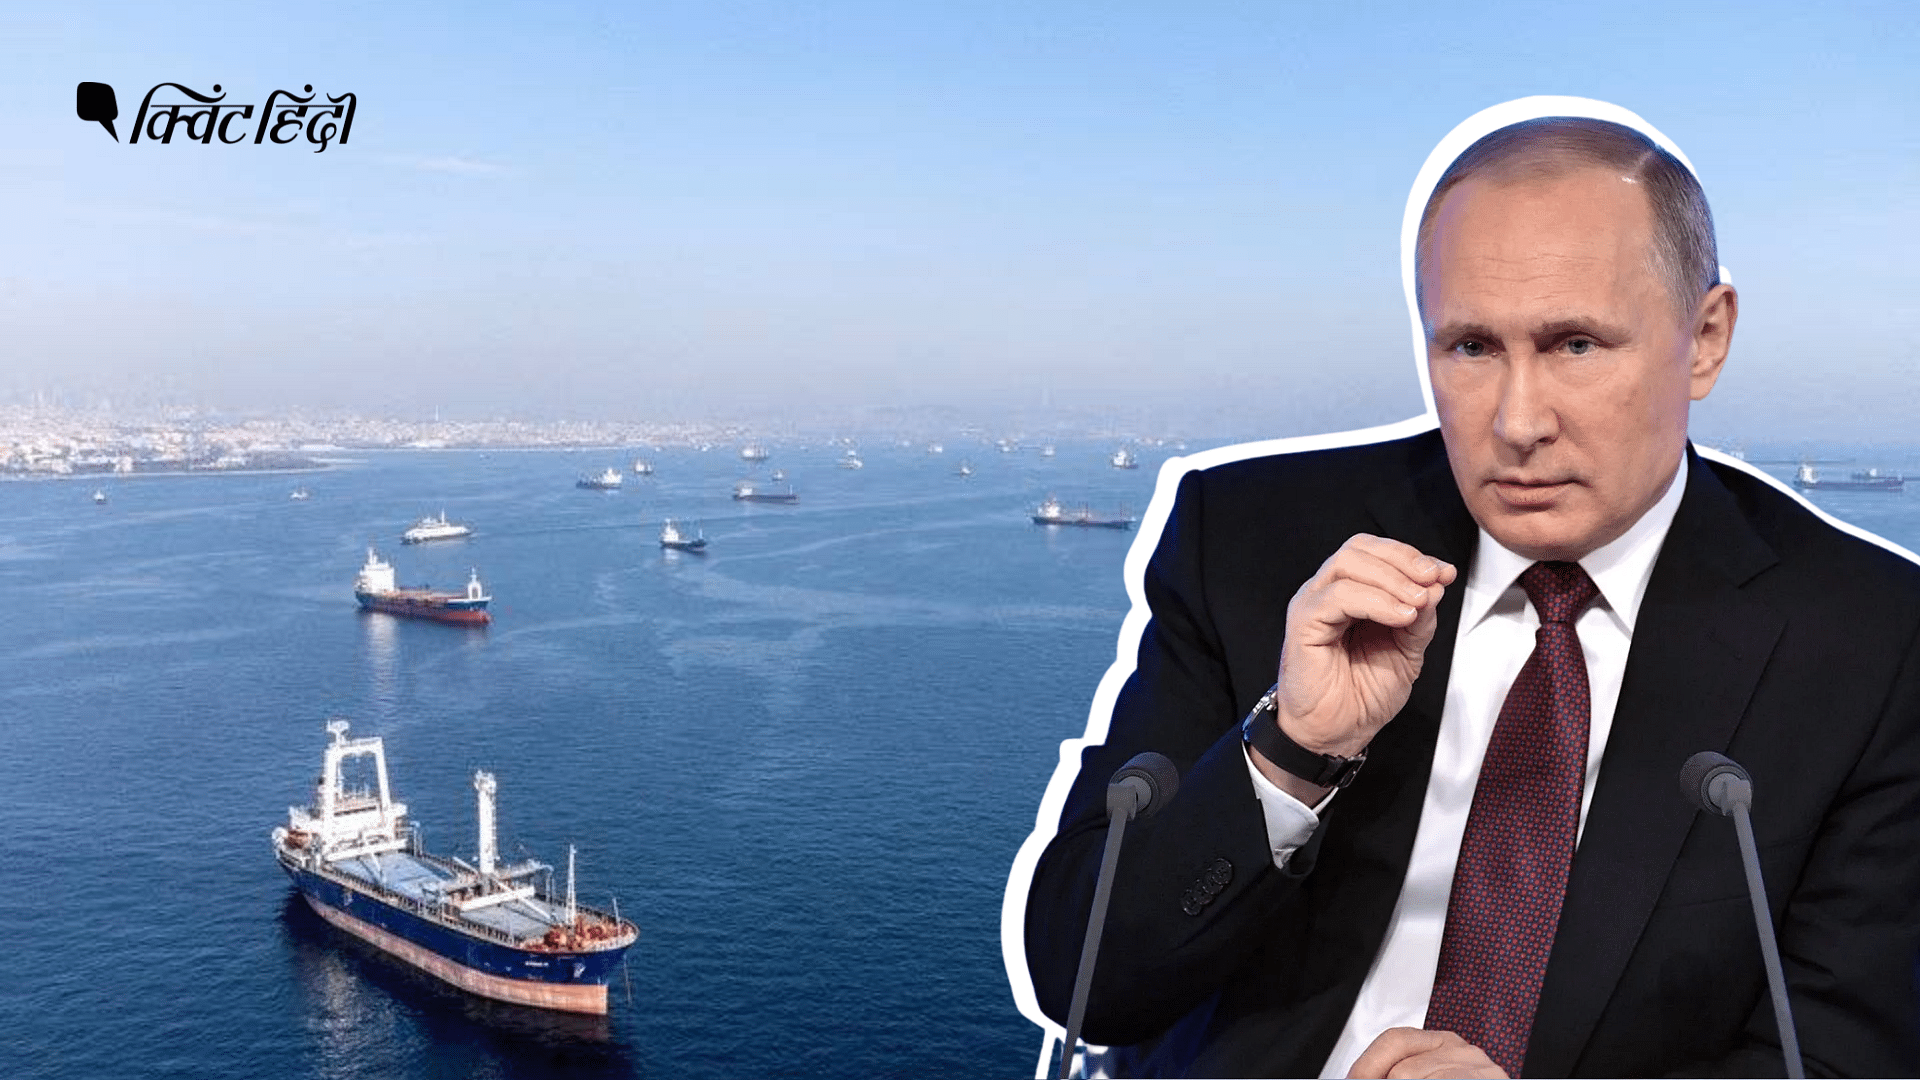 <div class="paragraphs"><p>काला सागर अनाज निर्यात समझौता क्यों रद्द किया रूस? दुनिया के किन देशों पर खतरा?</p></div>